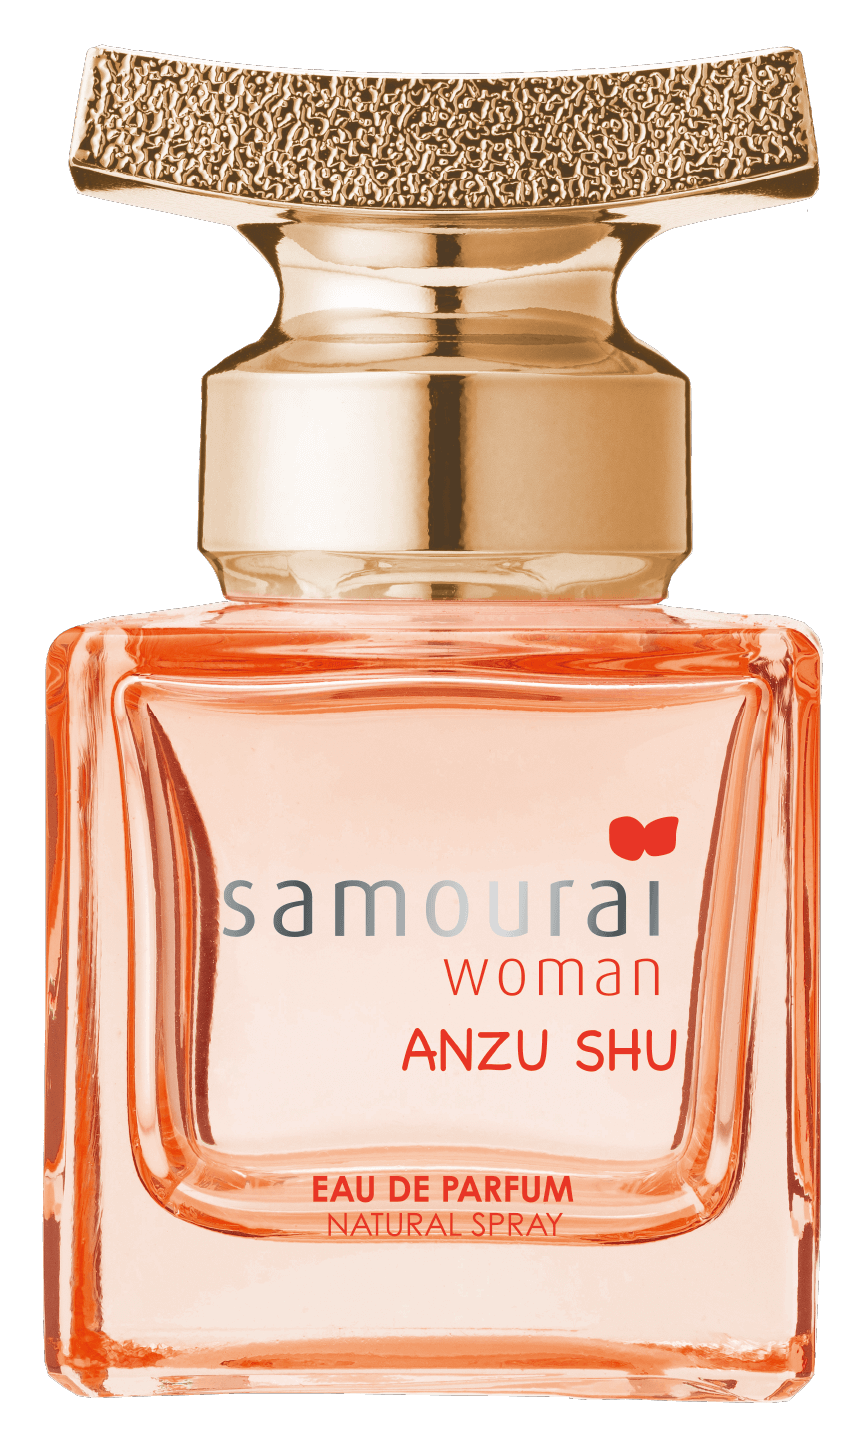 サムライウーマン公式サイト Samourai Woman Official Site